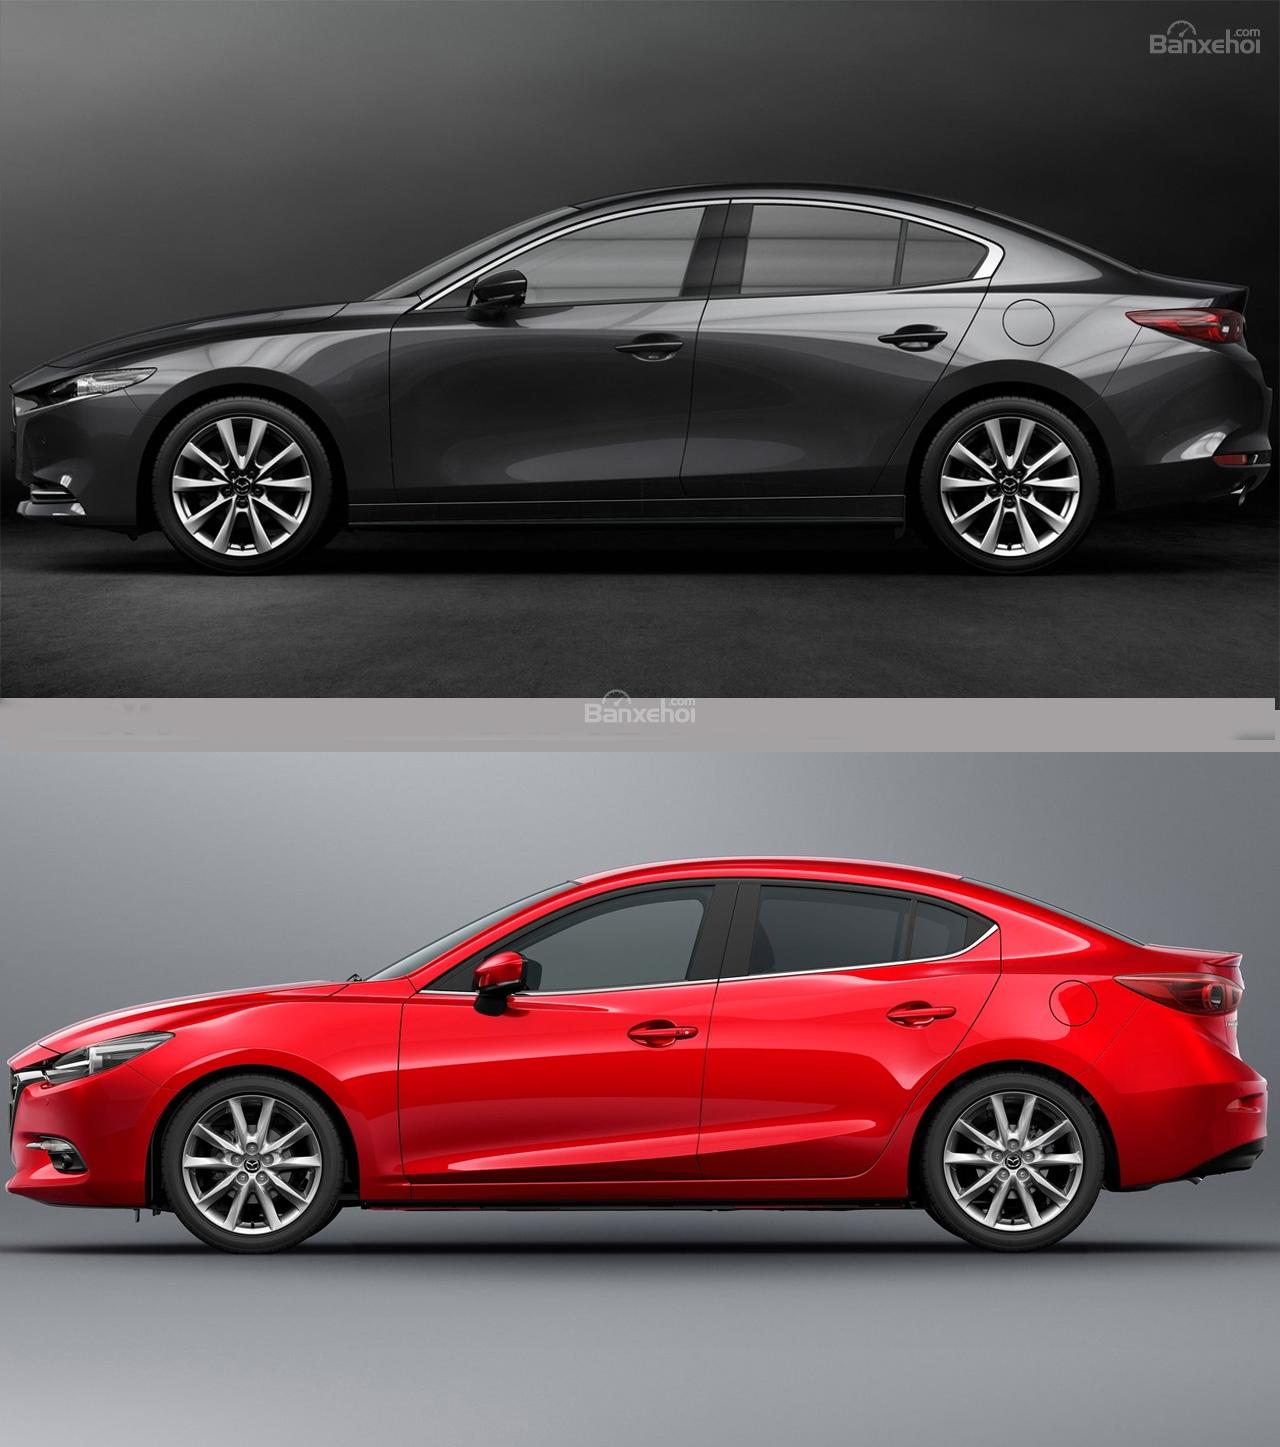 So sánh Mazda 3 với những chiếc xe khác sẽ giúp bạn hiểu rõ hơn về sự khác biệt mà nó mang đến. Với những ảnh so sánh chi tiết, bạn sẽ dễ dàng nhận ra những ưu điểm vượt trội của Mazda 3 về độ an toàn, công nghệ, tiết kiệm nhiên liệu cũng như sự thoải mái khi lái xe. Hãy khám phá và tìm hiểu ngay hôm nay!